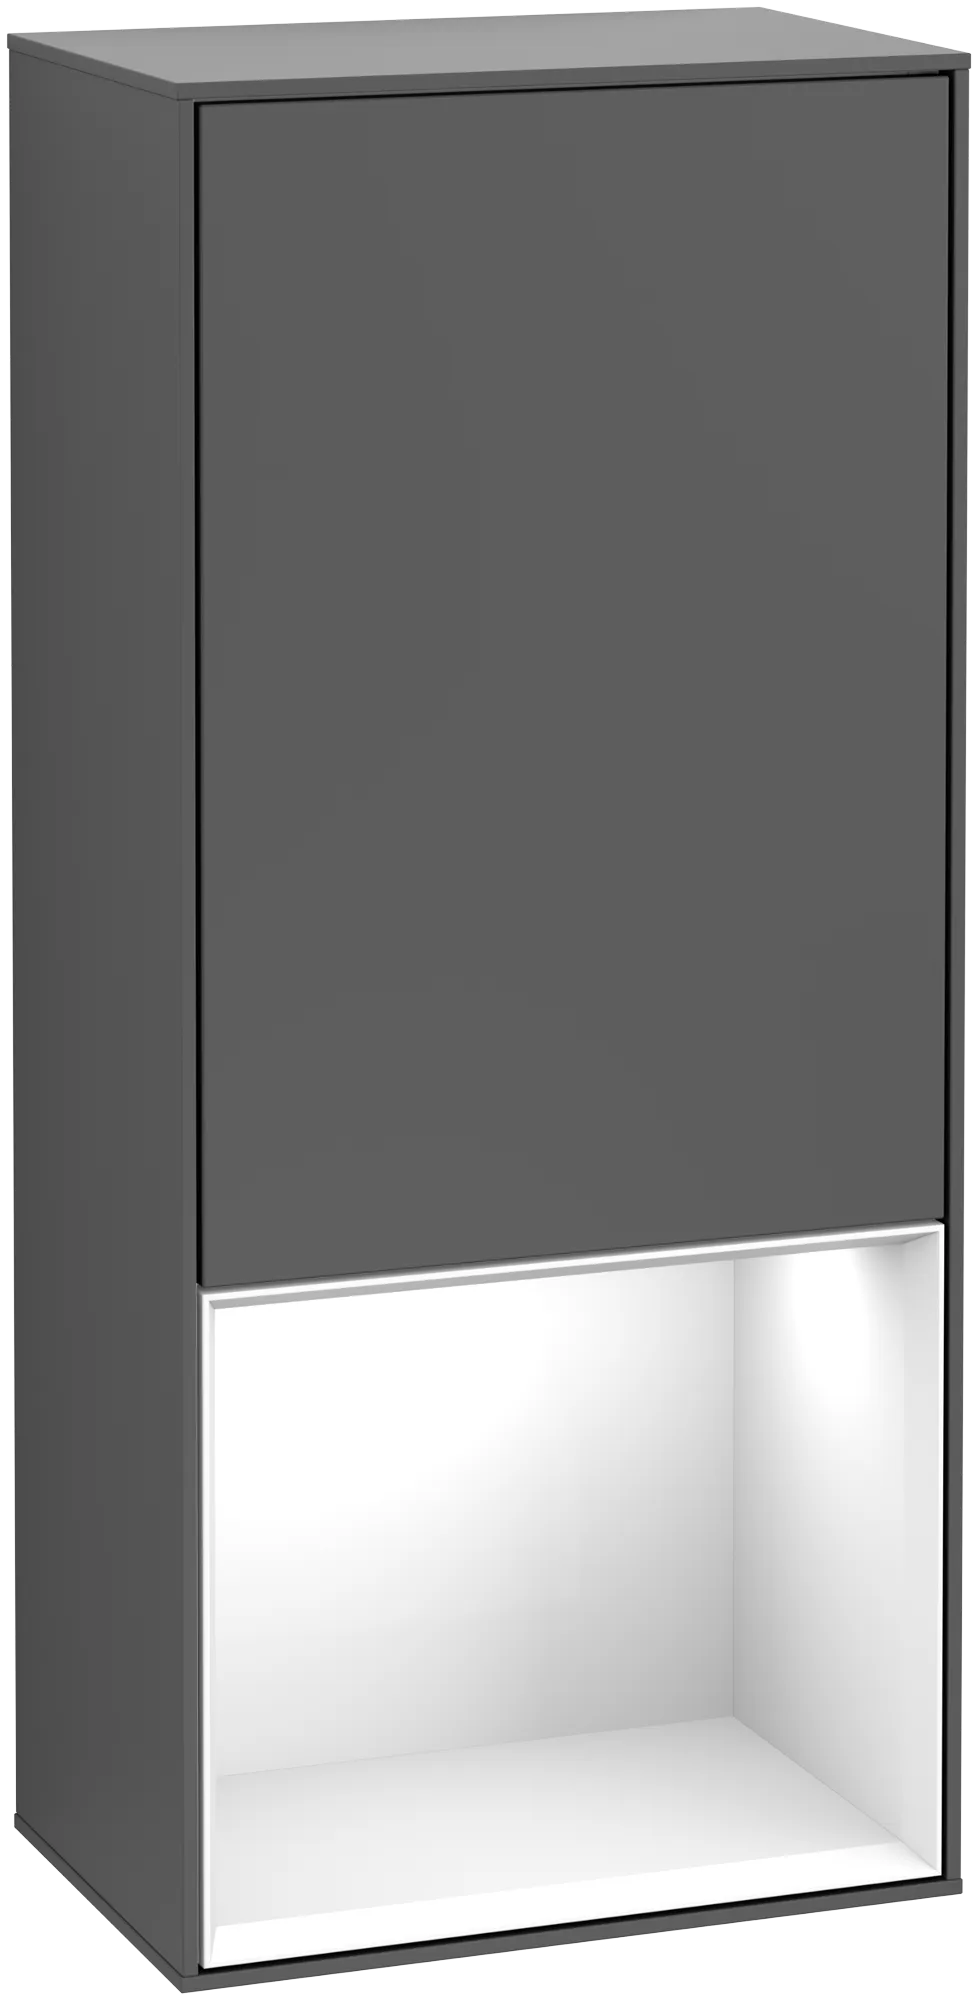 Bild von VILLEROY BOCH Finion Seitenschrank, mit Beleuchtung, 1 Tür, 418 x 936 x 270 mm, Anthracite Matt Lacquer / Glossy White Lacquer #G540GFGK